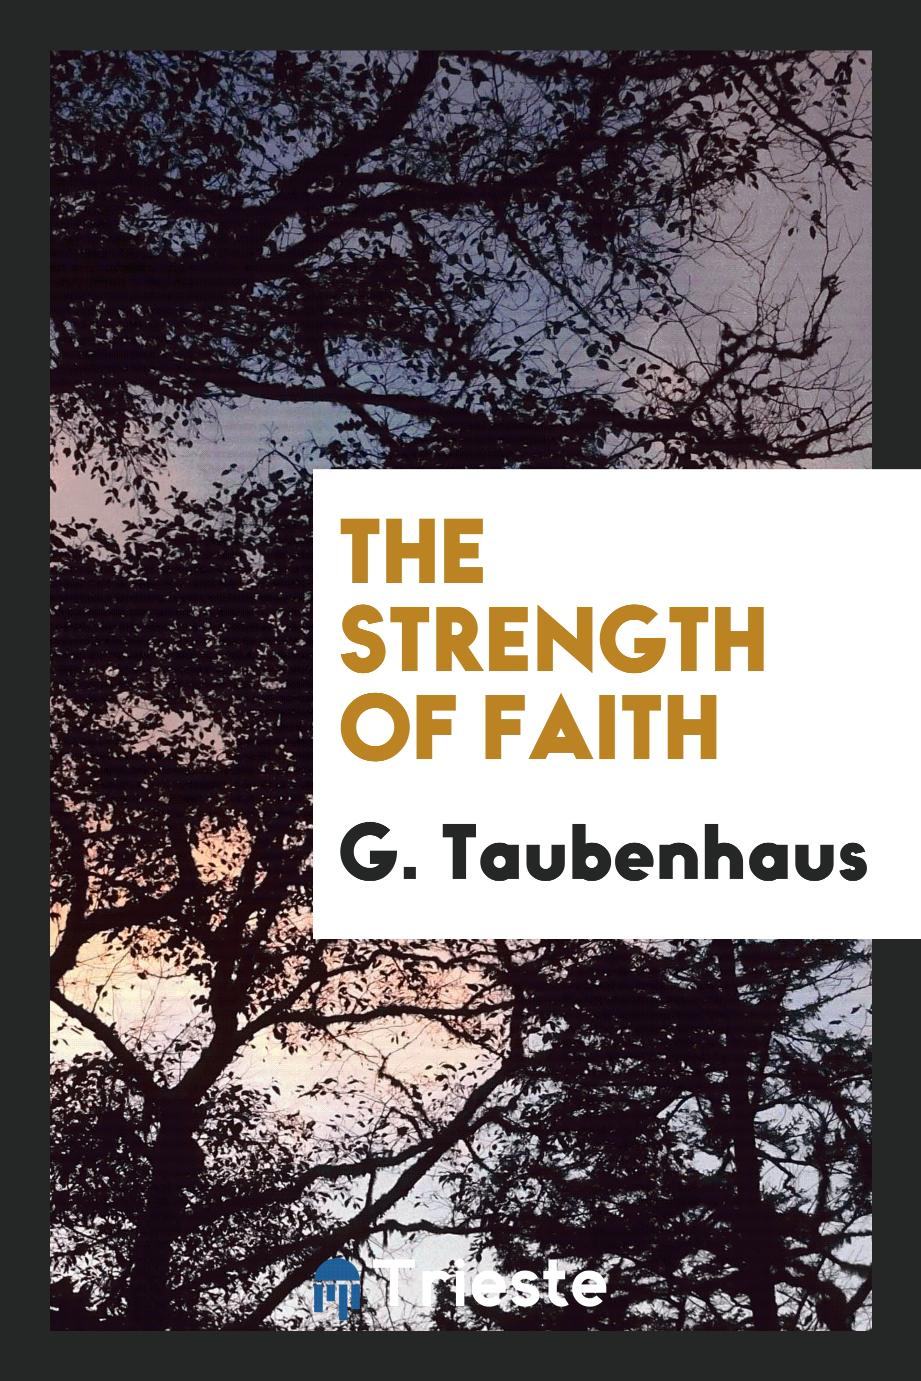 The Strength of Faith